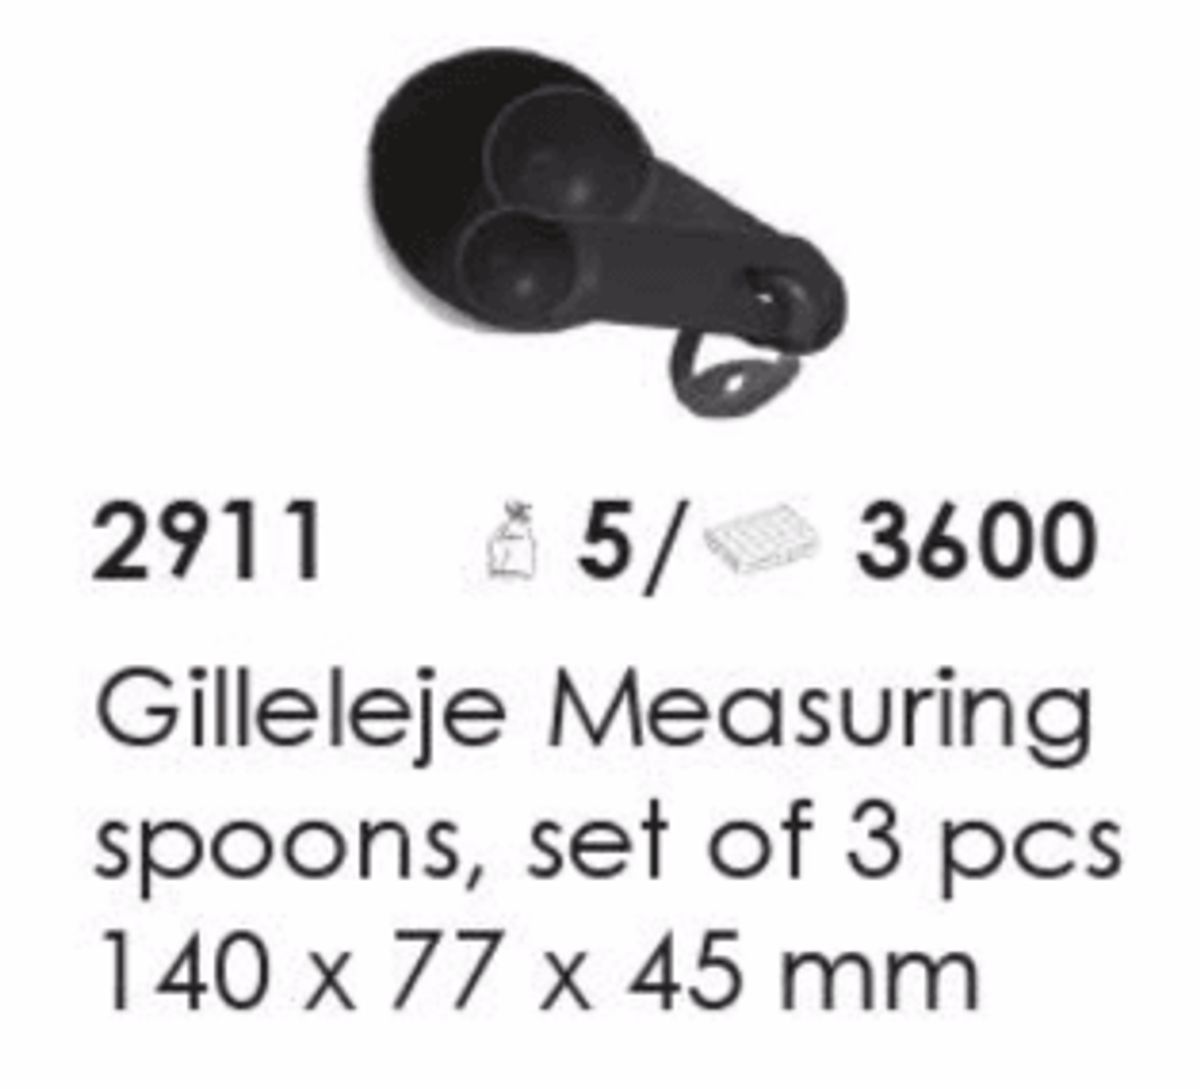 Gilleleje Measuring spoons, set af 3, artikel nr. 2911 (Måleske) Foto: Screenshot fra katalog fra Plast Team A/S.